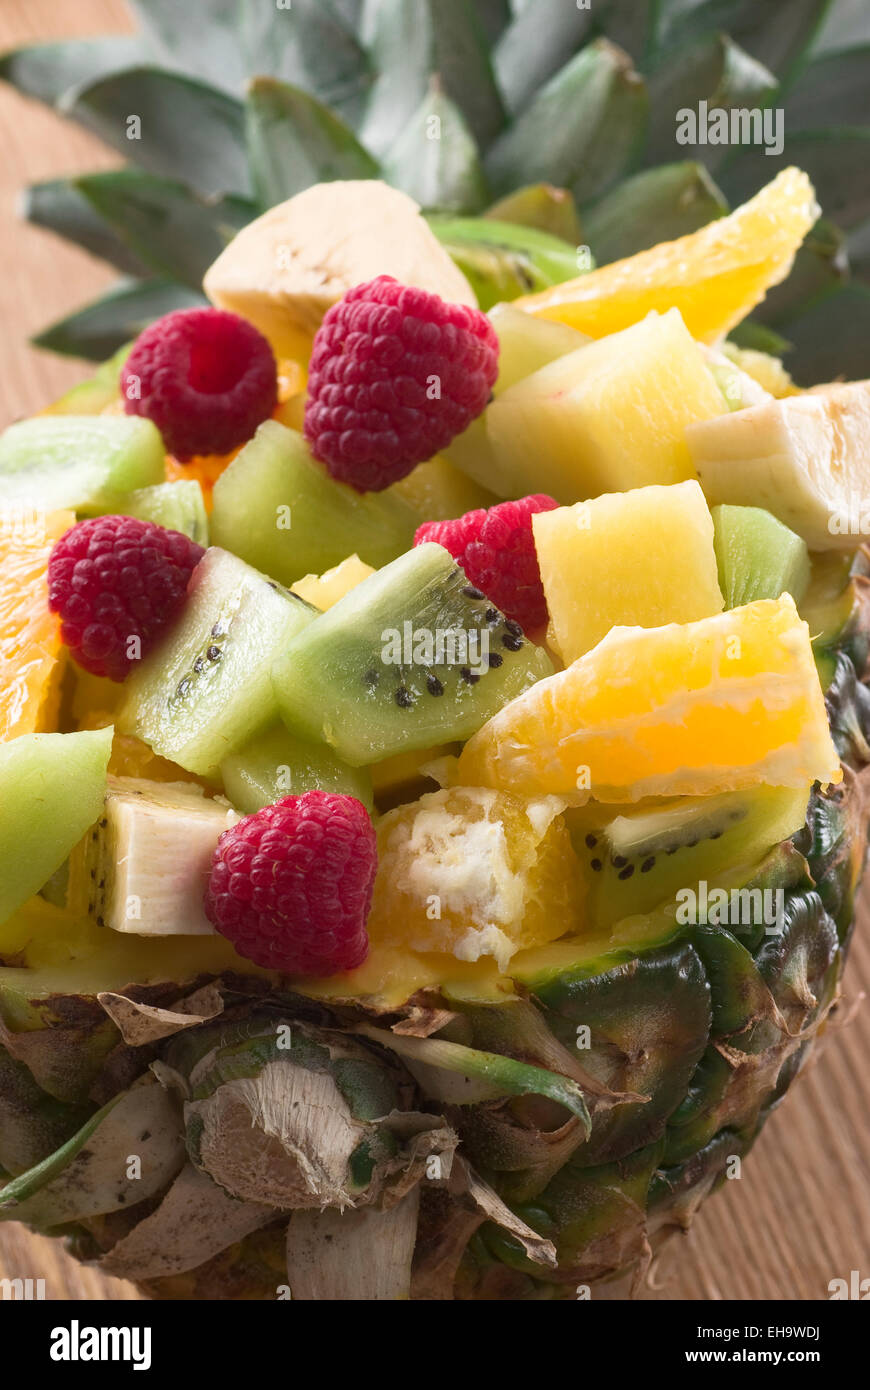 Ensalada de frutas servido en una piña. Foto de stock